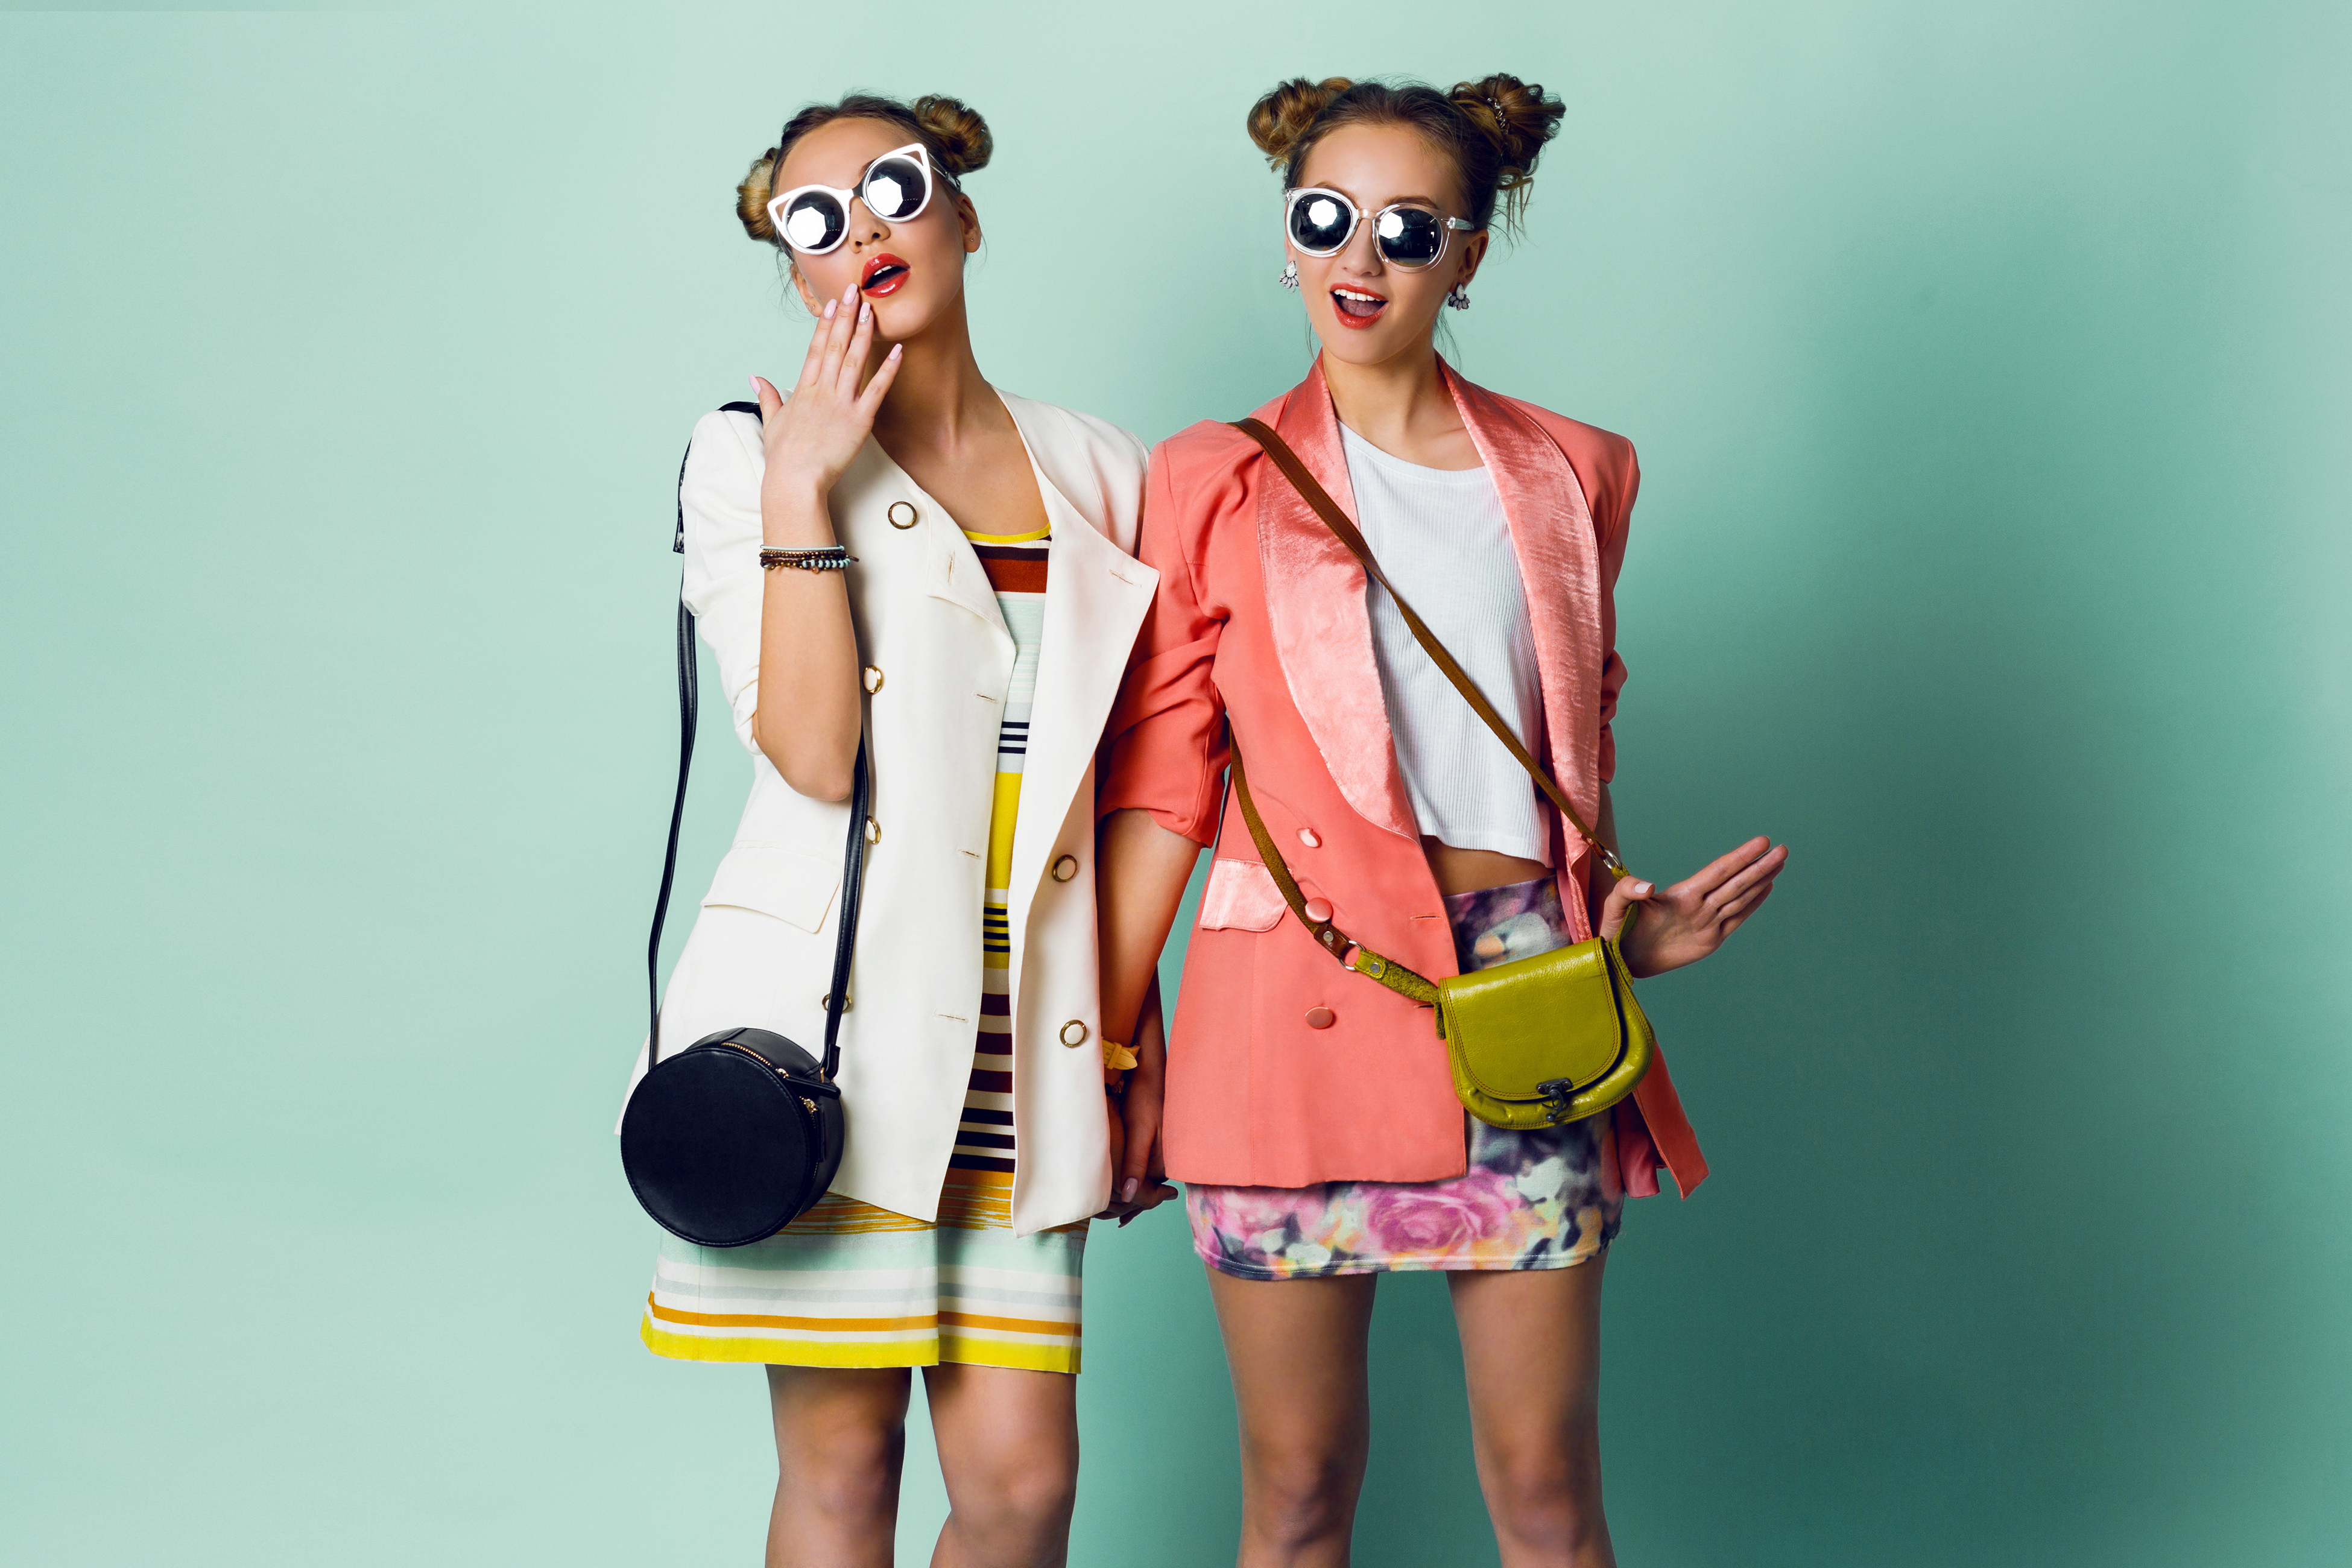 Deux sœurs avec des coiffures à cornes portant des vestes élégantes et des lunettes de soleil funky | Source : Shutterstock